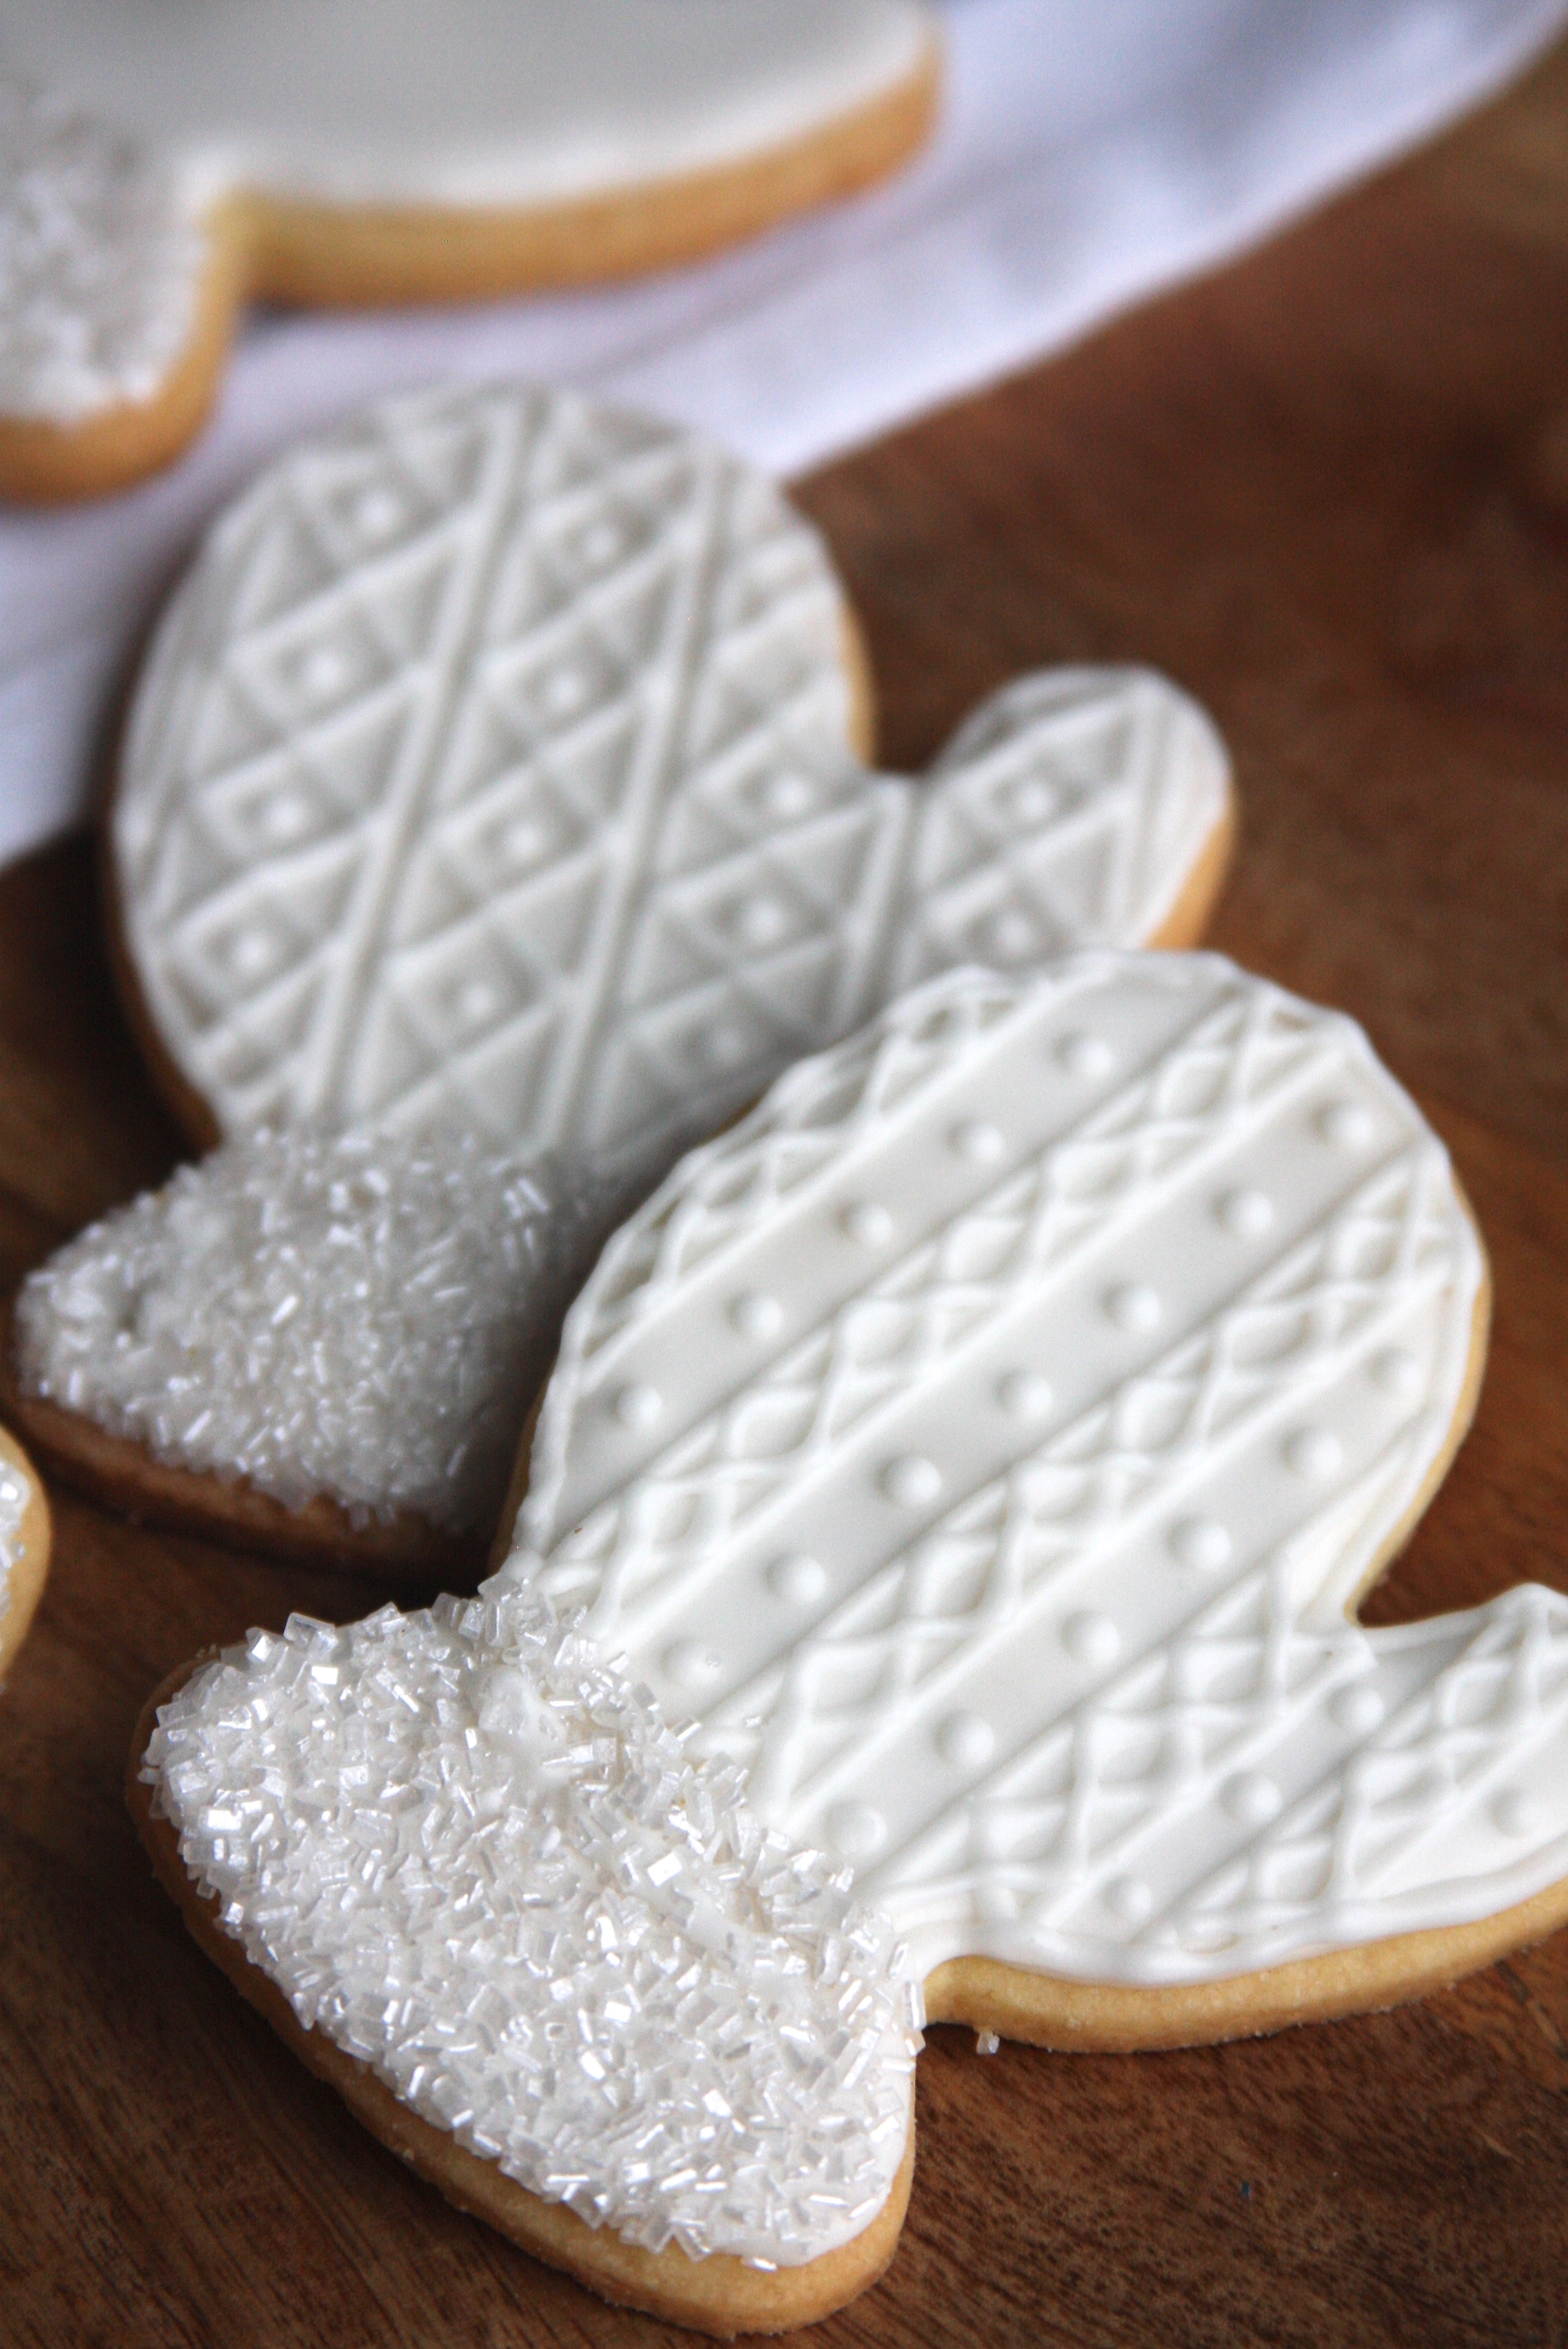 Winter Mitten Sugar Cookies